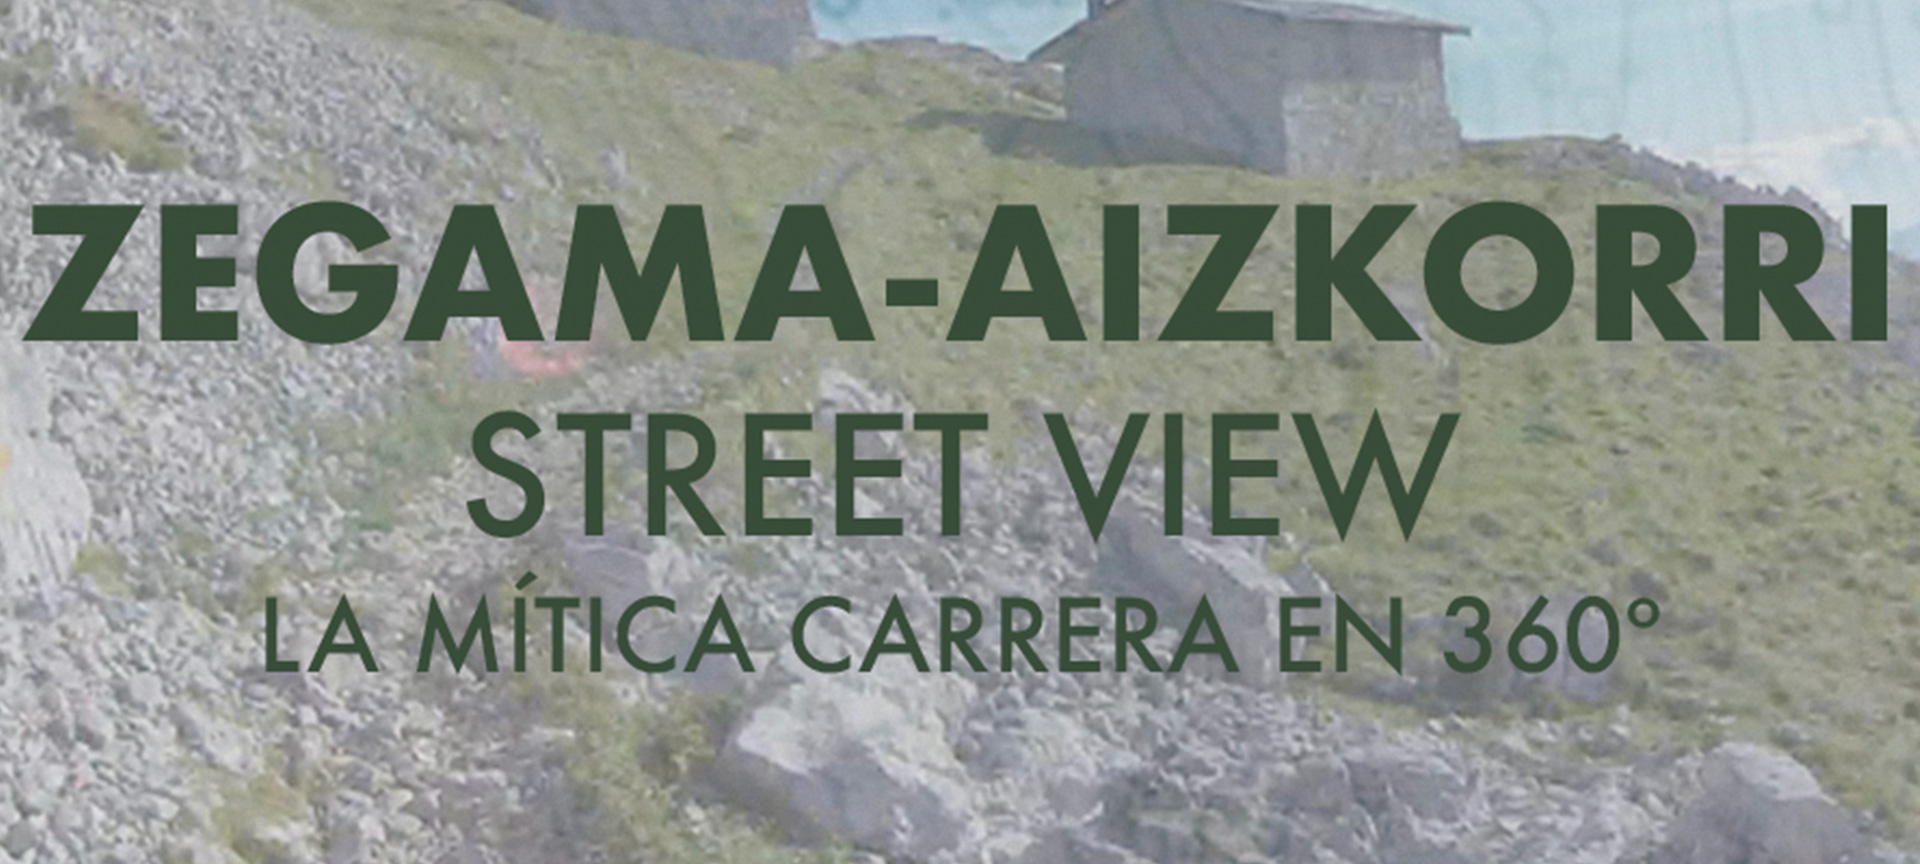 Zegama-Aizkorri orain ikusgai Google Street View-en